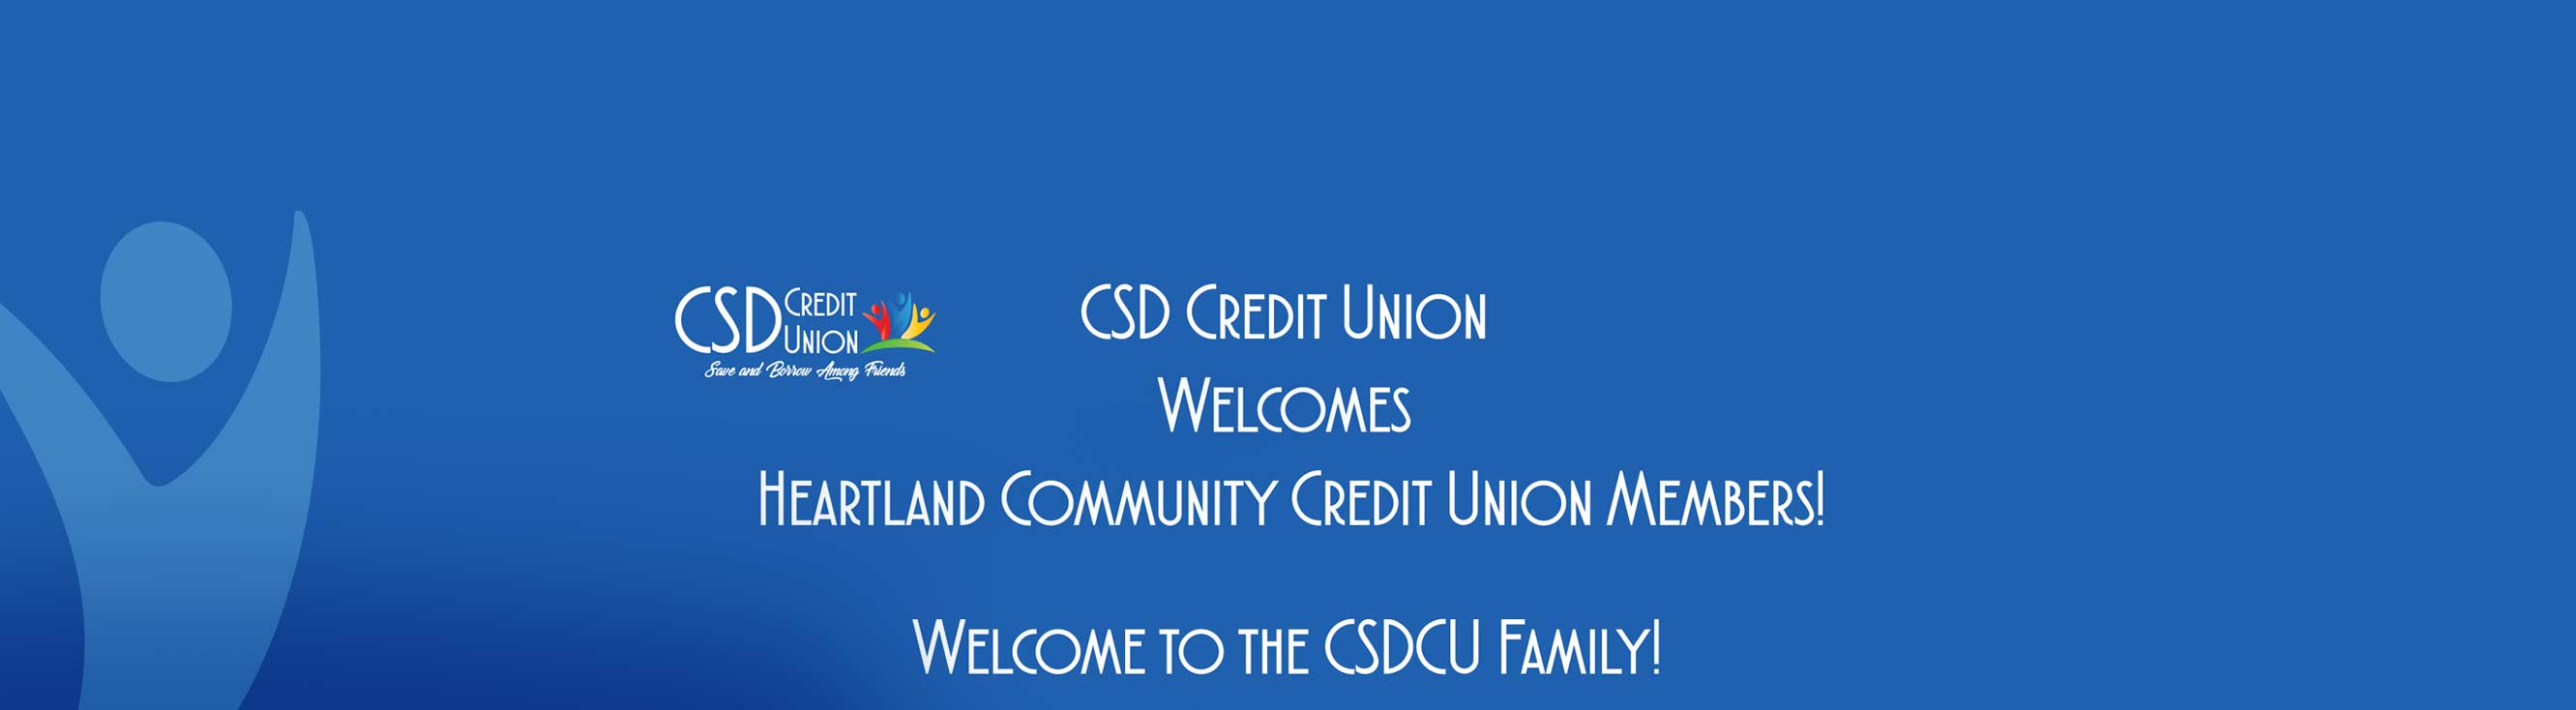 HCCU Merger CSD Credit Union